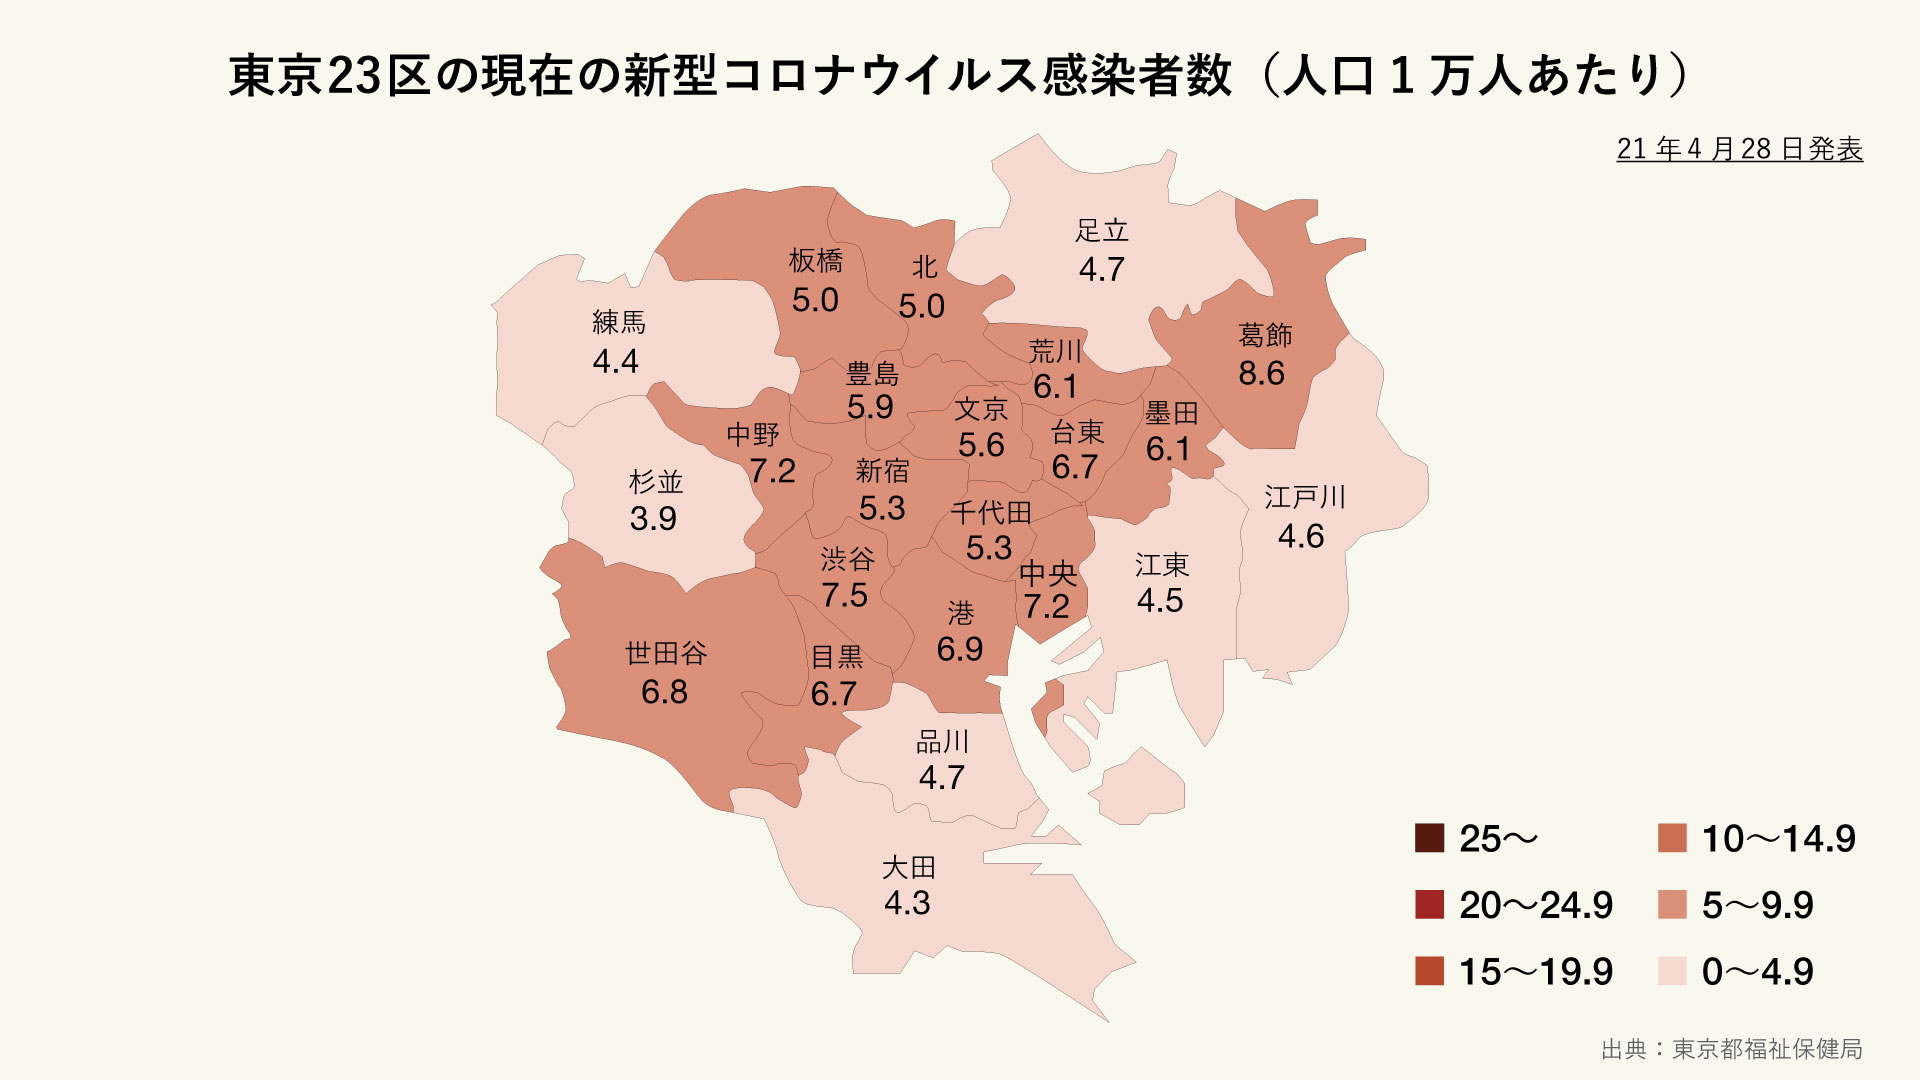 東京23区の現在の新型コロナウイルス感染者（人口1万人あたり）の分布マップ